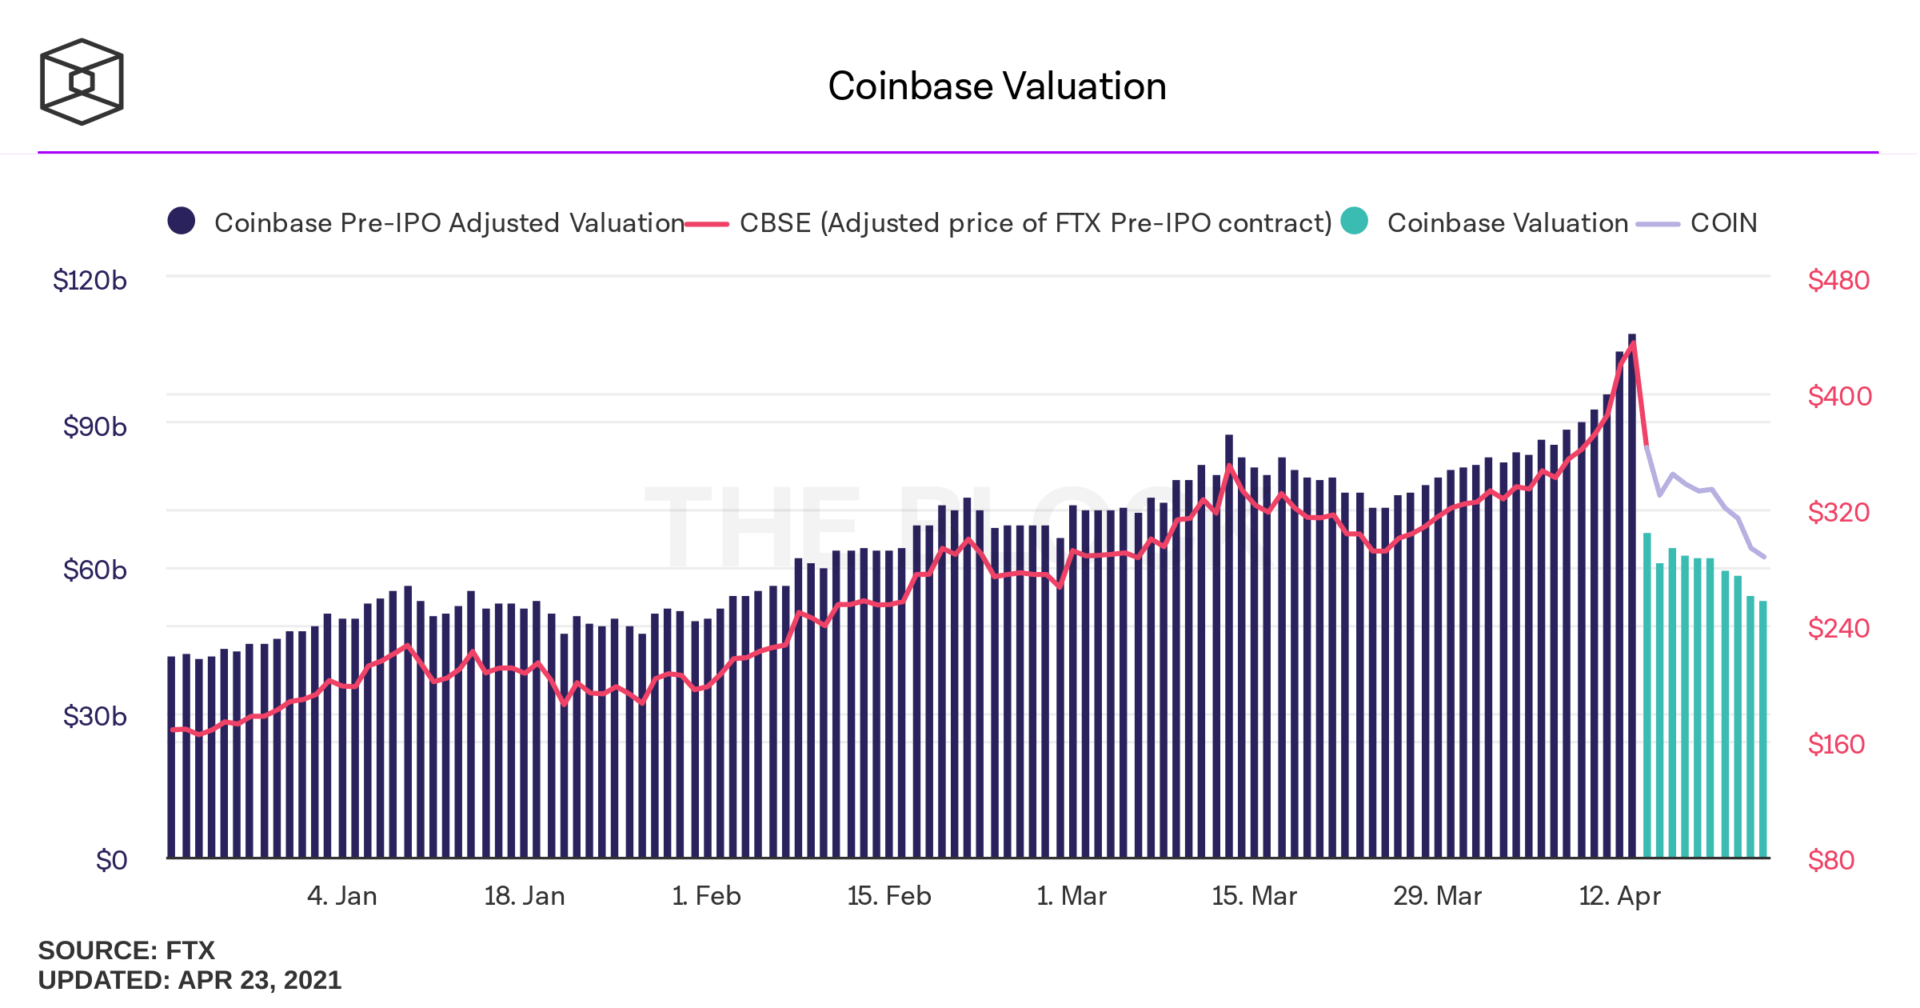 Valorisation de Coinbase avant et après son introduction en bourse exprimée en milliards de dollars 